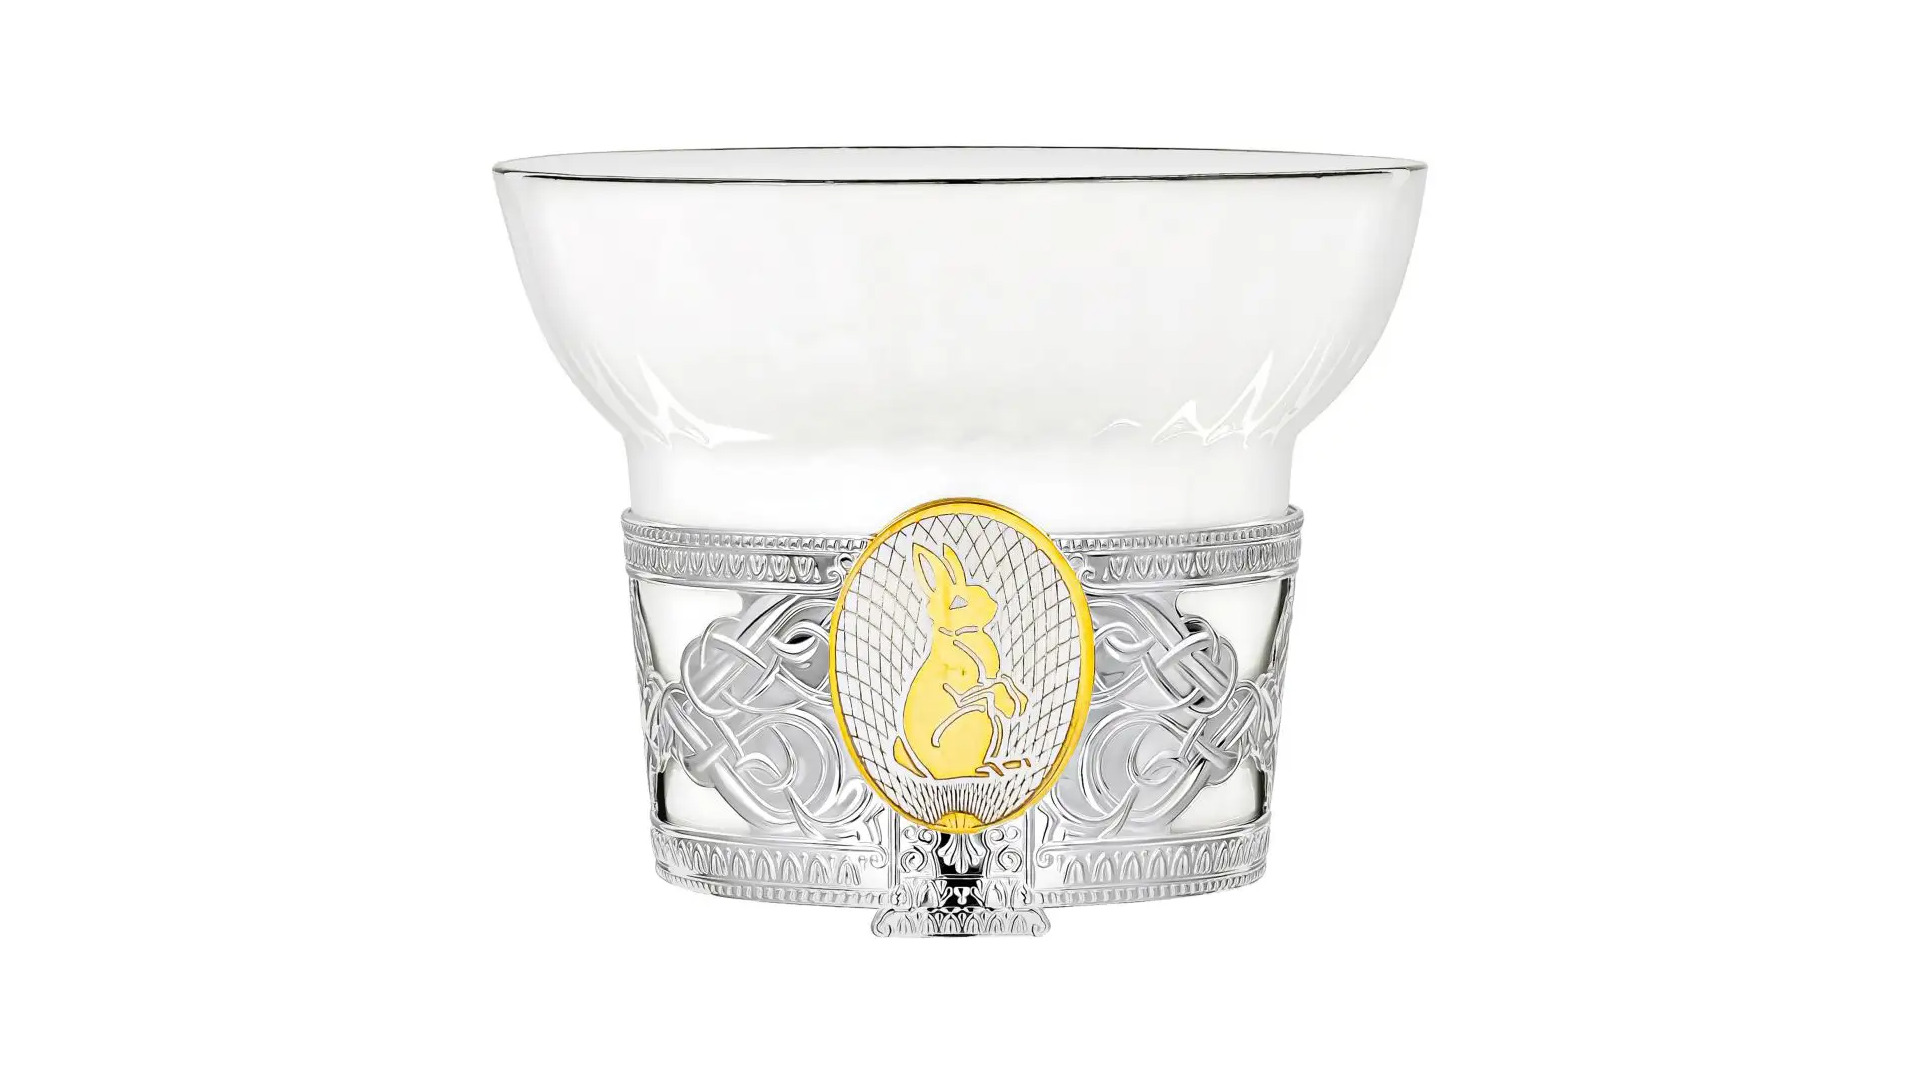 Чашка чайная с ложкой в футляре АргентА Кролик 66,25 г, 2 предмета, серебро 925, фарфор